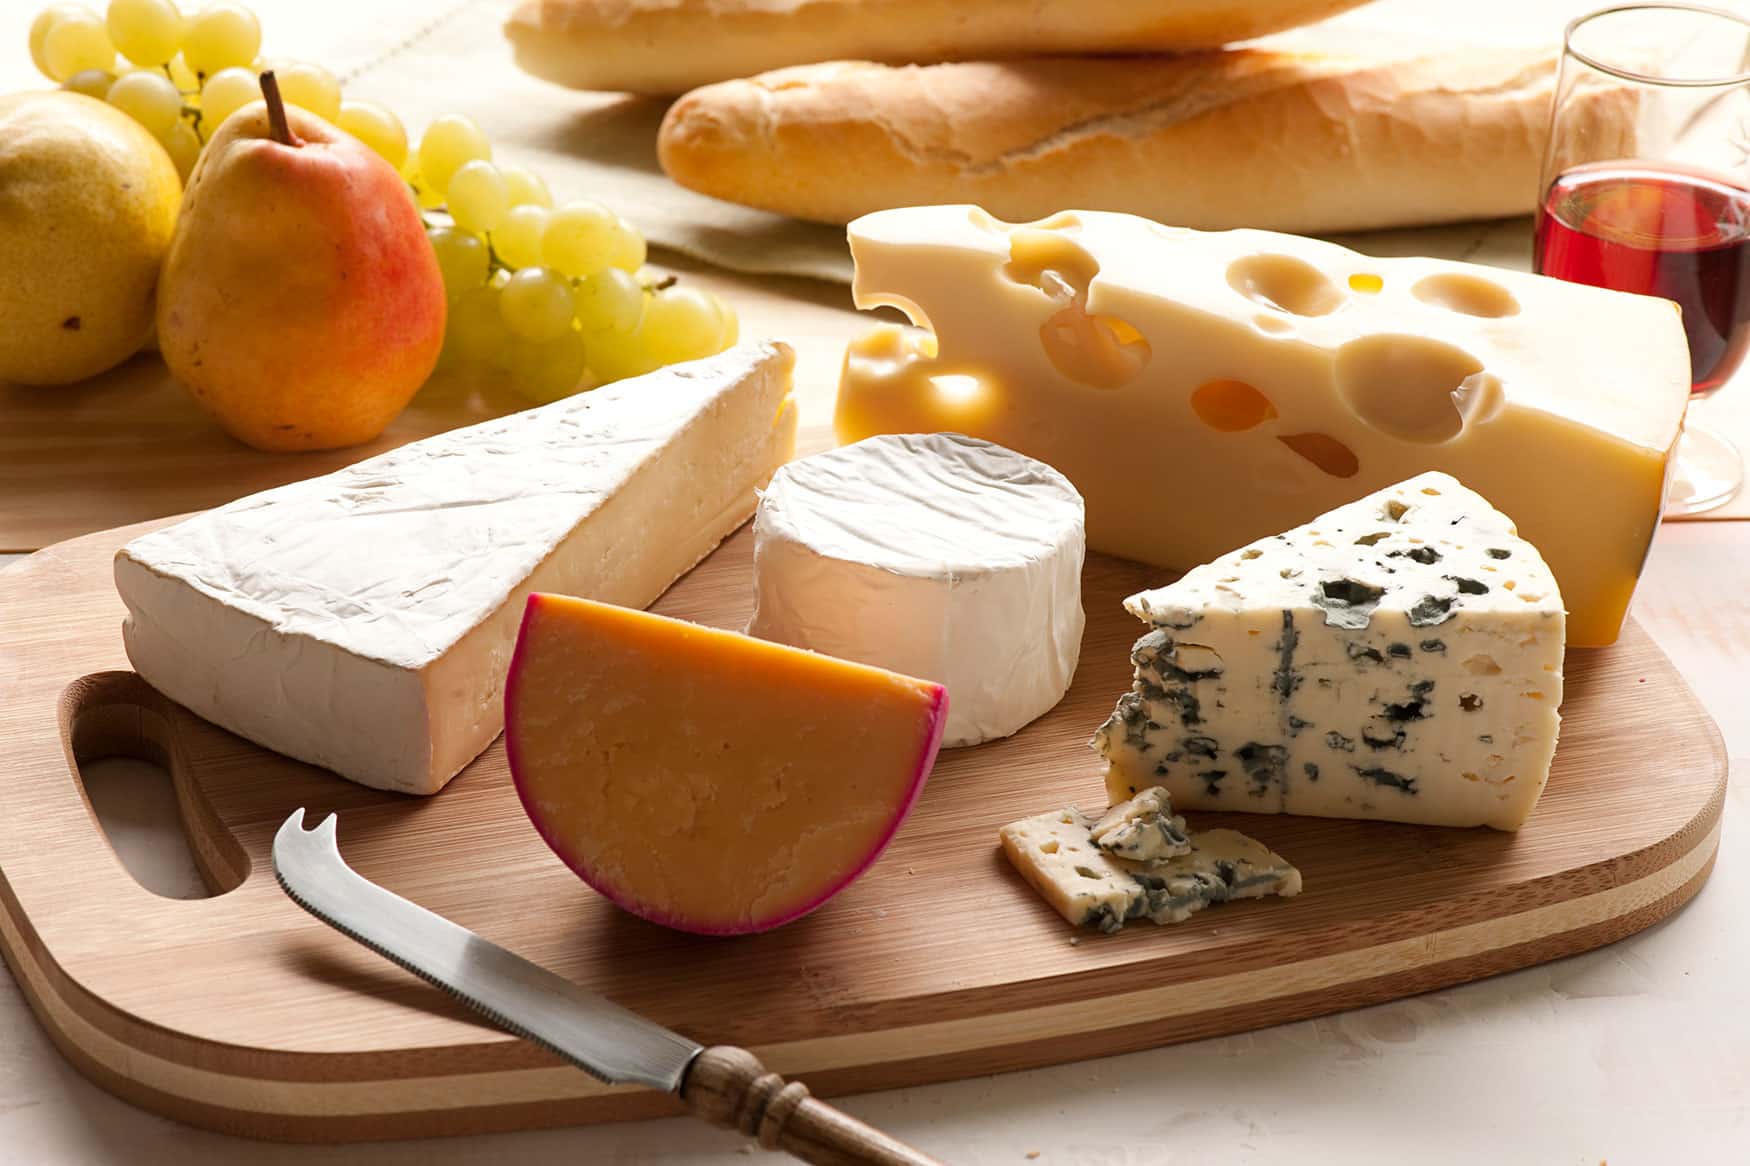 Le fromage en France